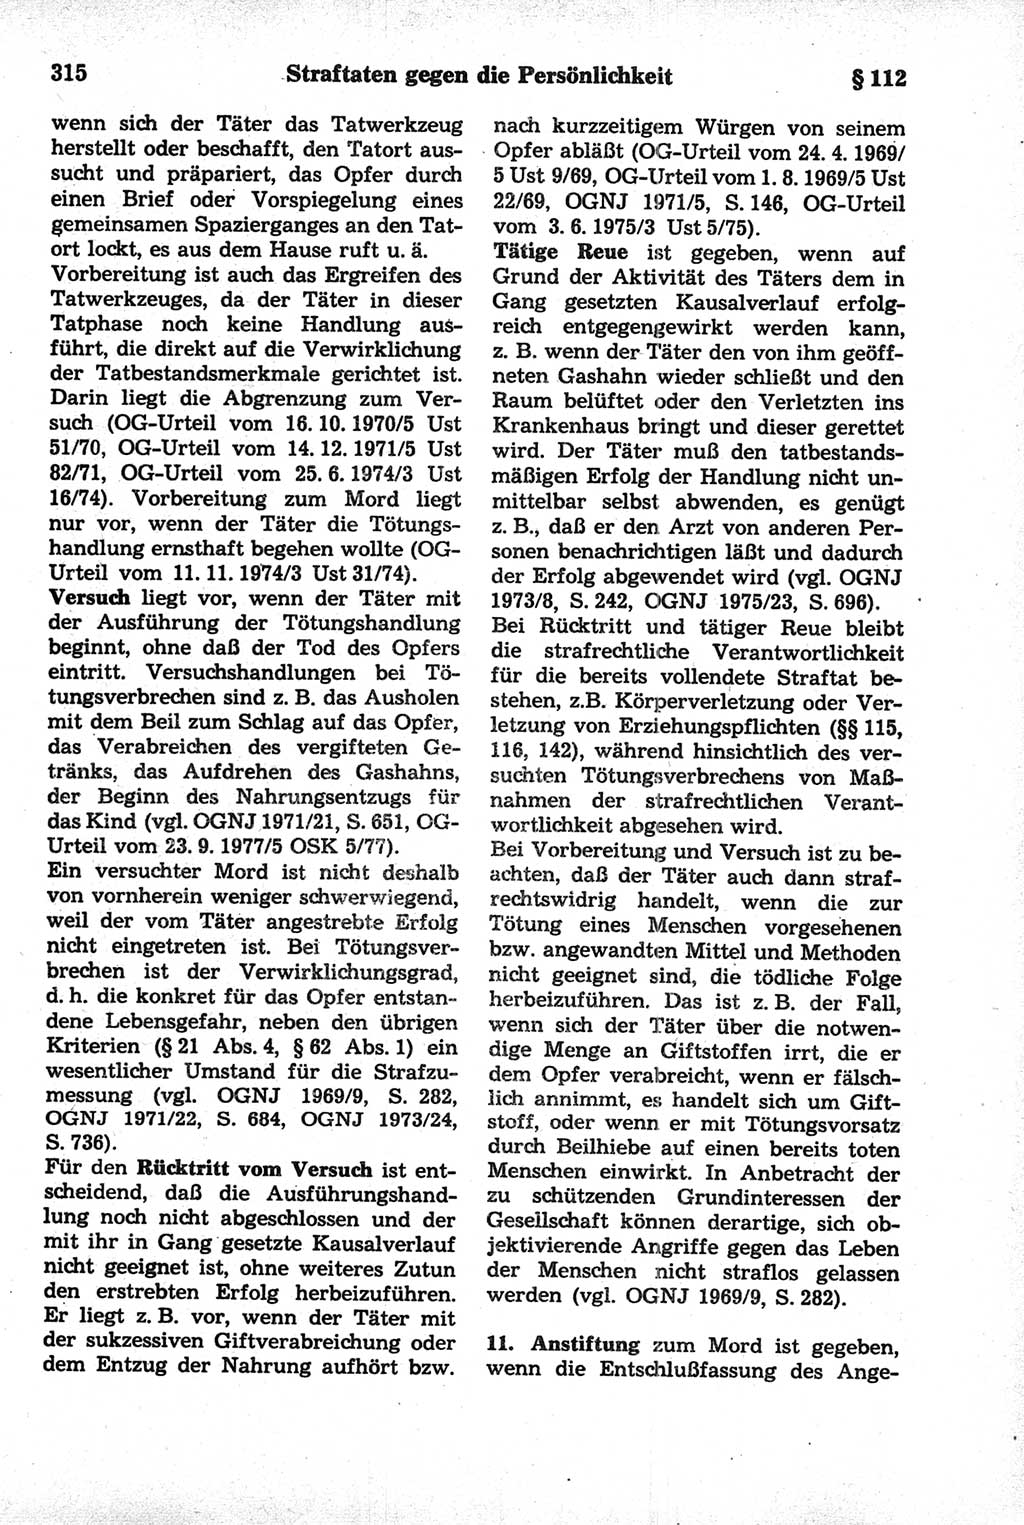 Strafrecht der Deutschen Demokratischen Republik (DDR), Kommentar zum Strafgesetzbuch (StGB) 1981, Seite 315 (Strafr. DDR Komm. StGB 1981, S. 315)